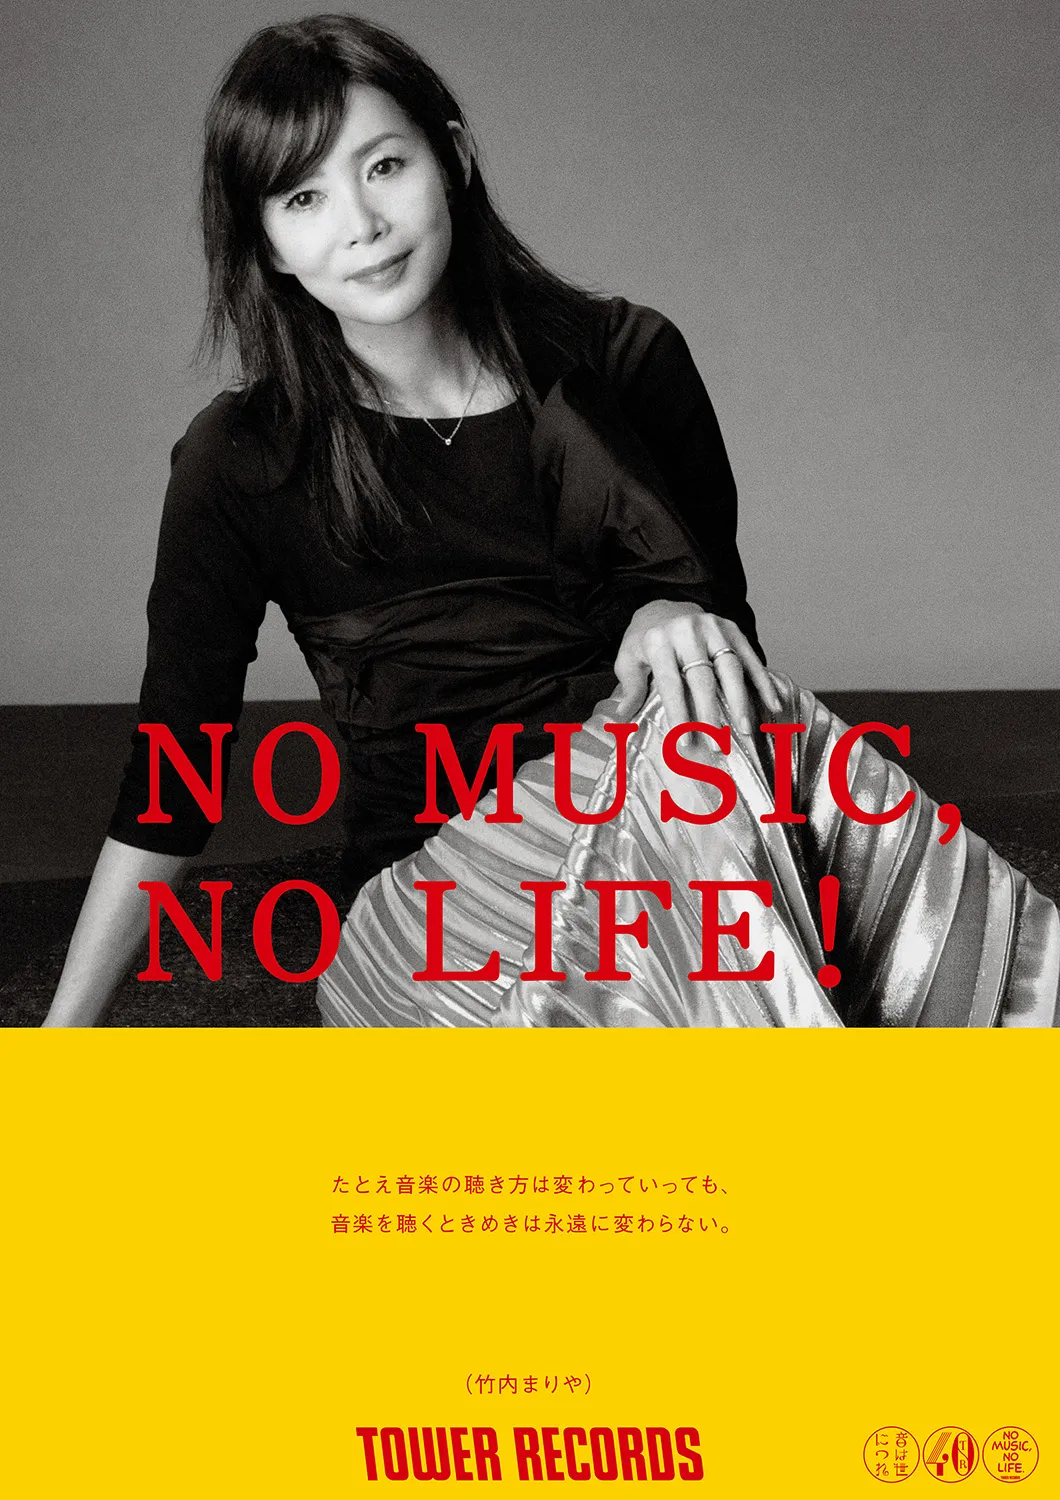 竹内まりやがタワレコ「NO MUSIC, NO LIFE.」に初登場 